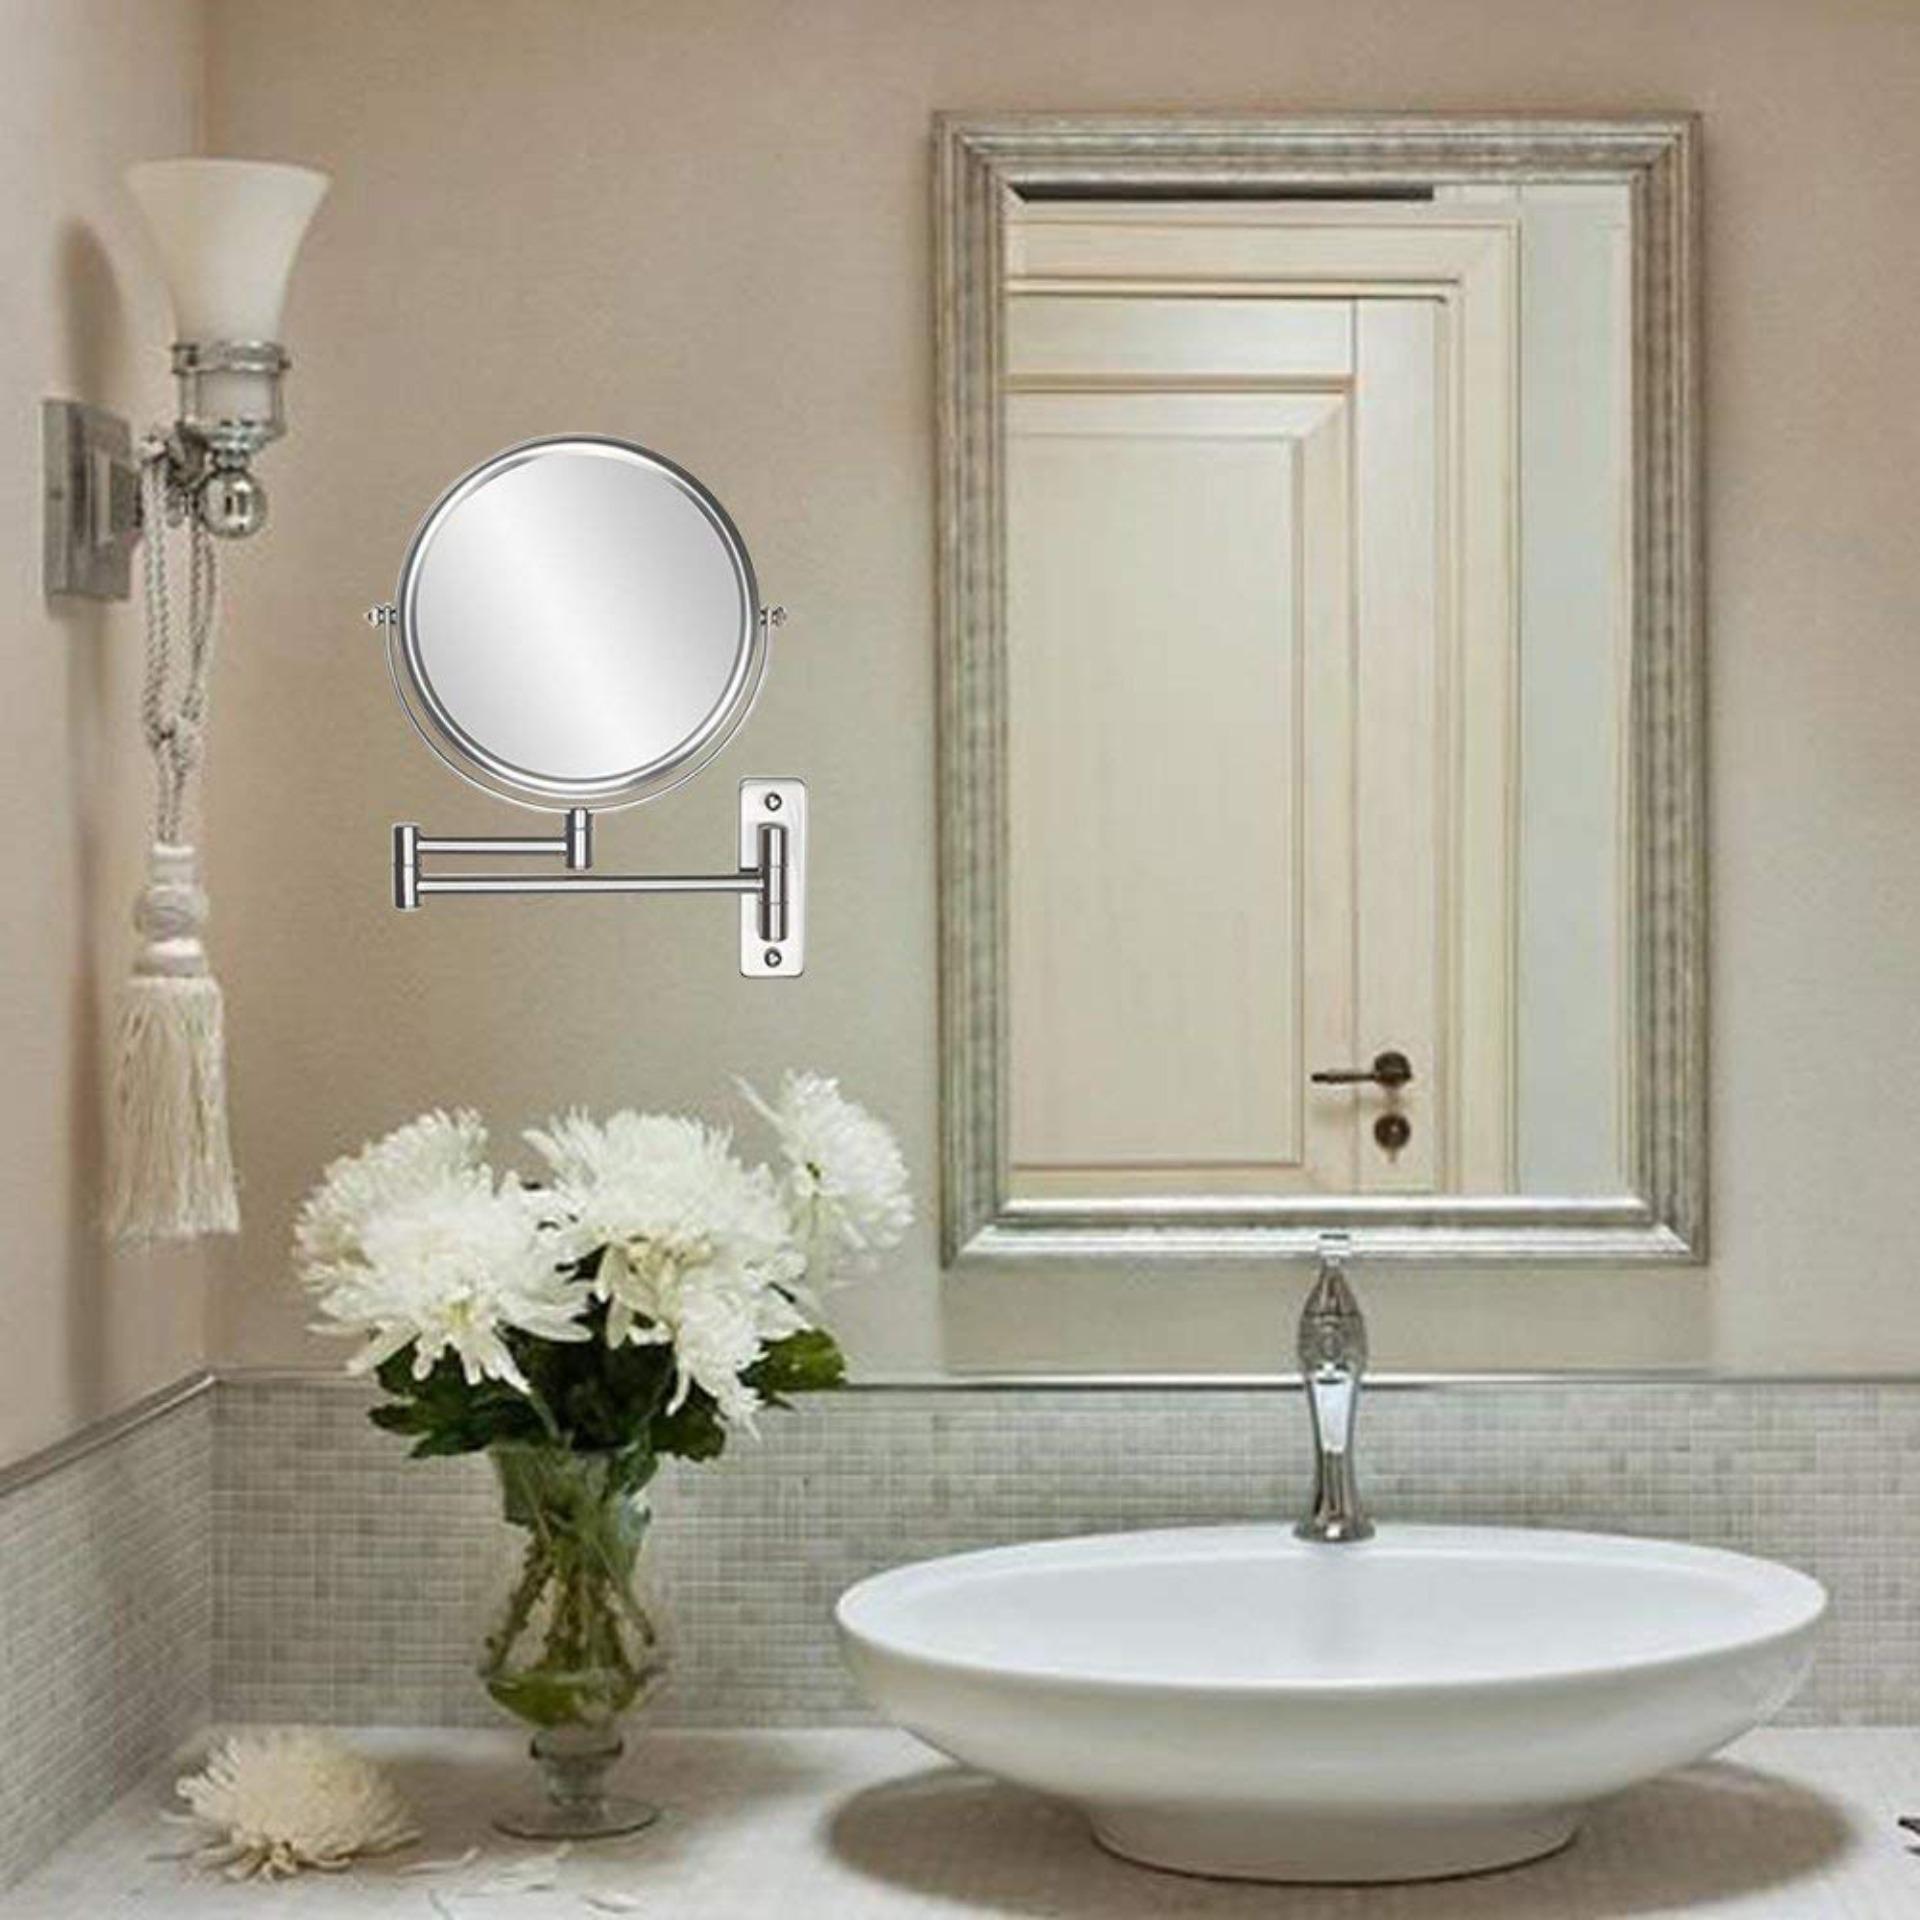 Gương phòng tắm caesar - Gương cạo râu phòng tắm, 2 mặt, phóng to, gắn tường